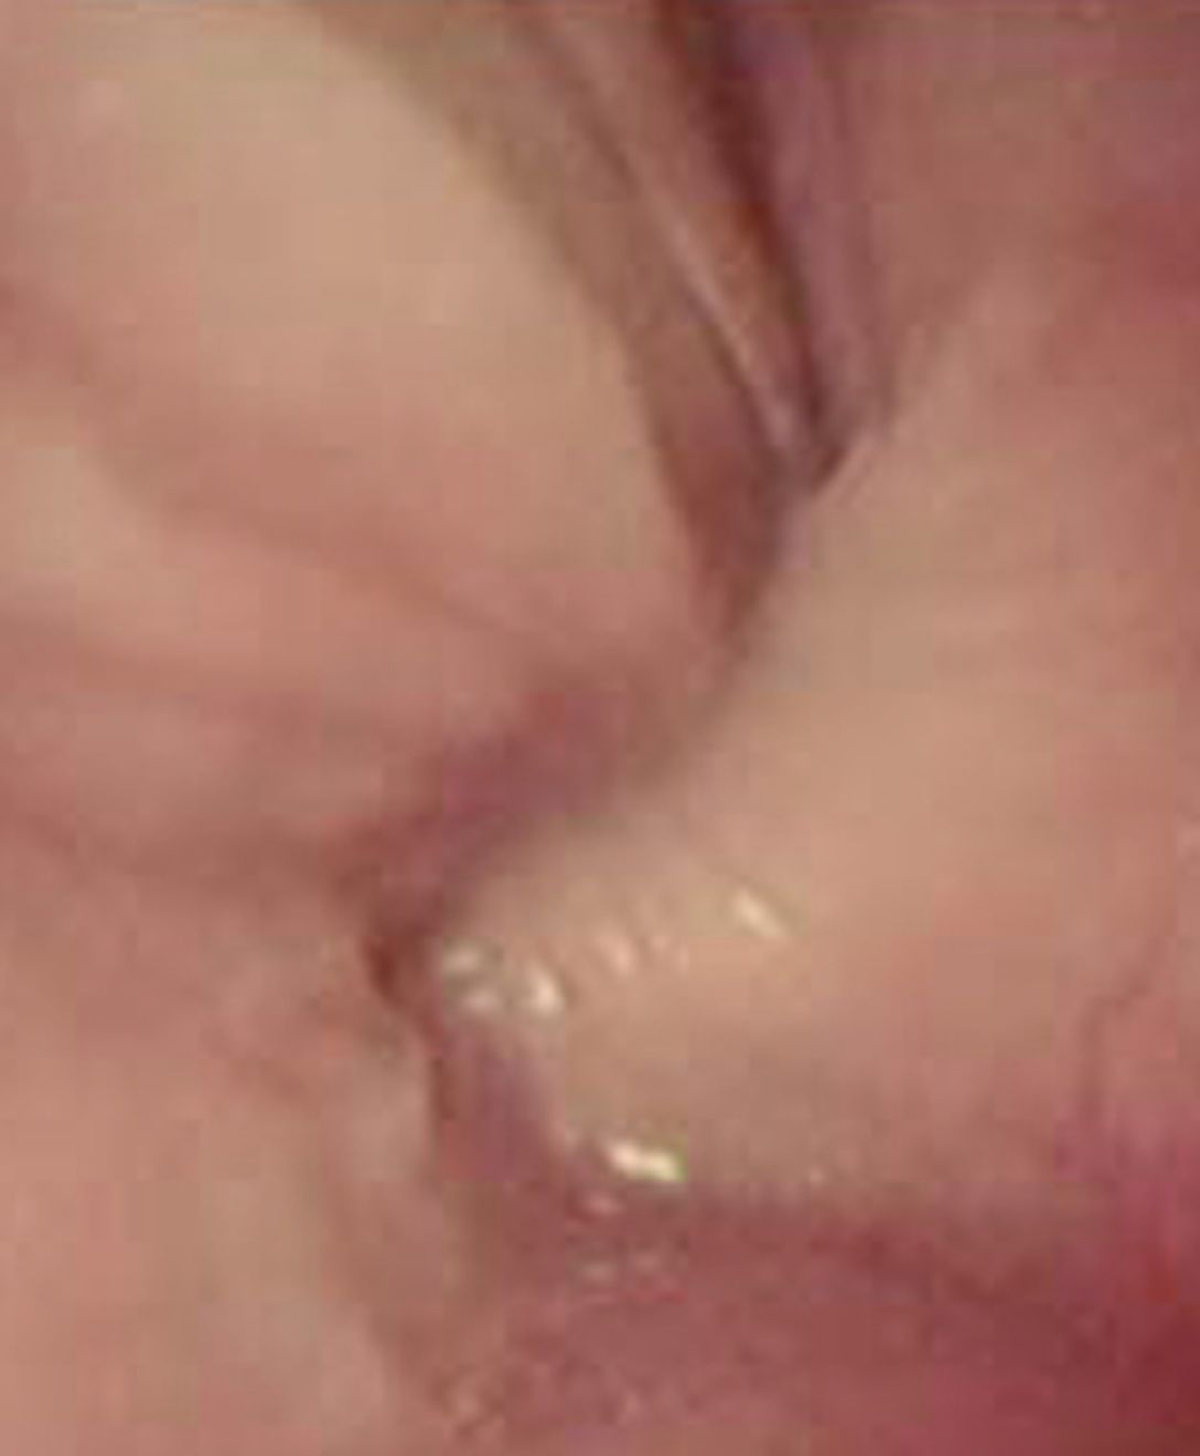 Compressione esofagea causata da un’anomalia dell’anello vascolare osservate mediante endoscopia.